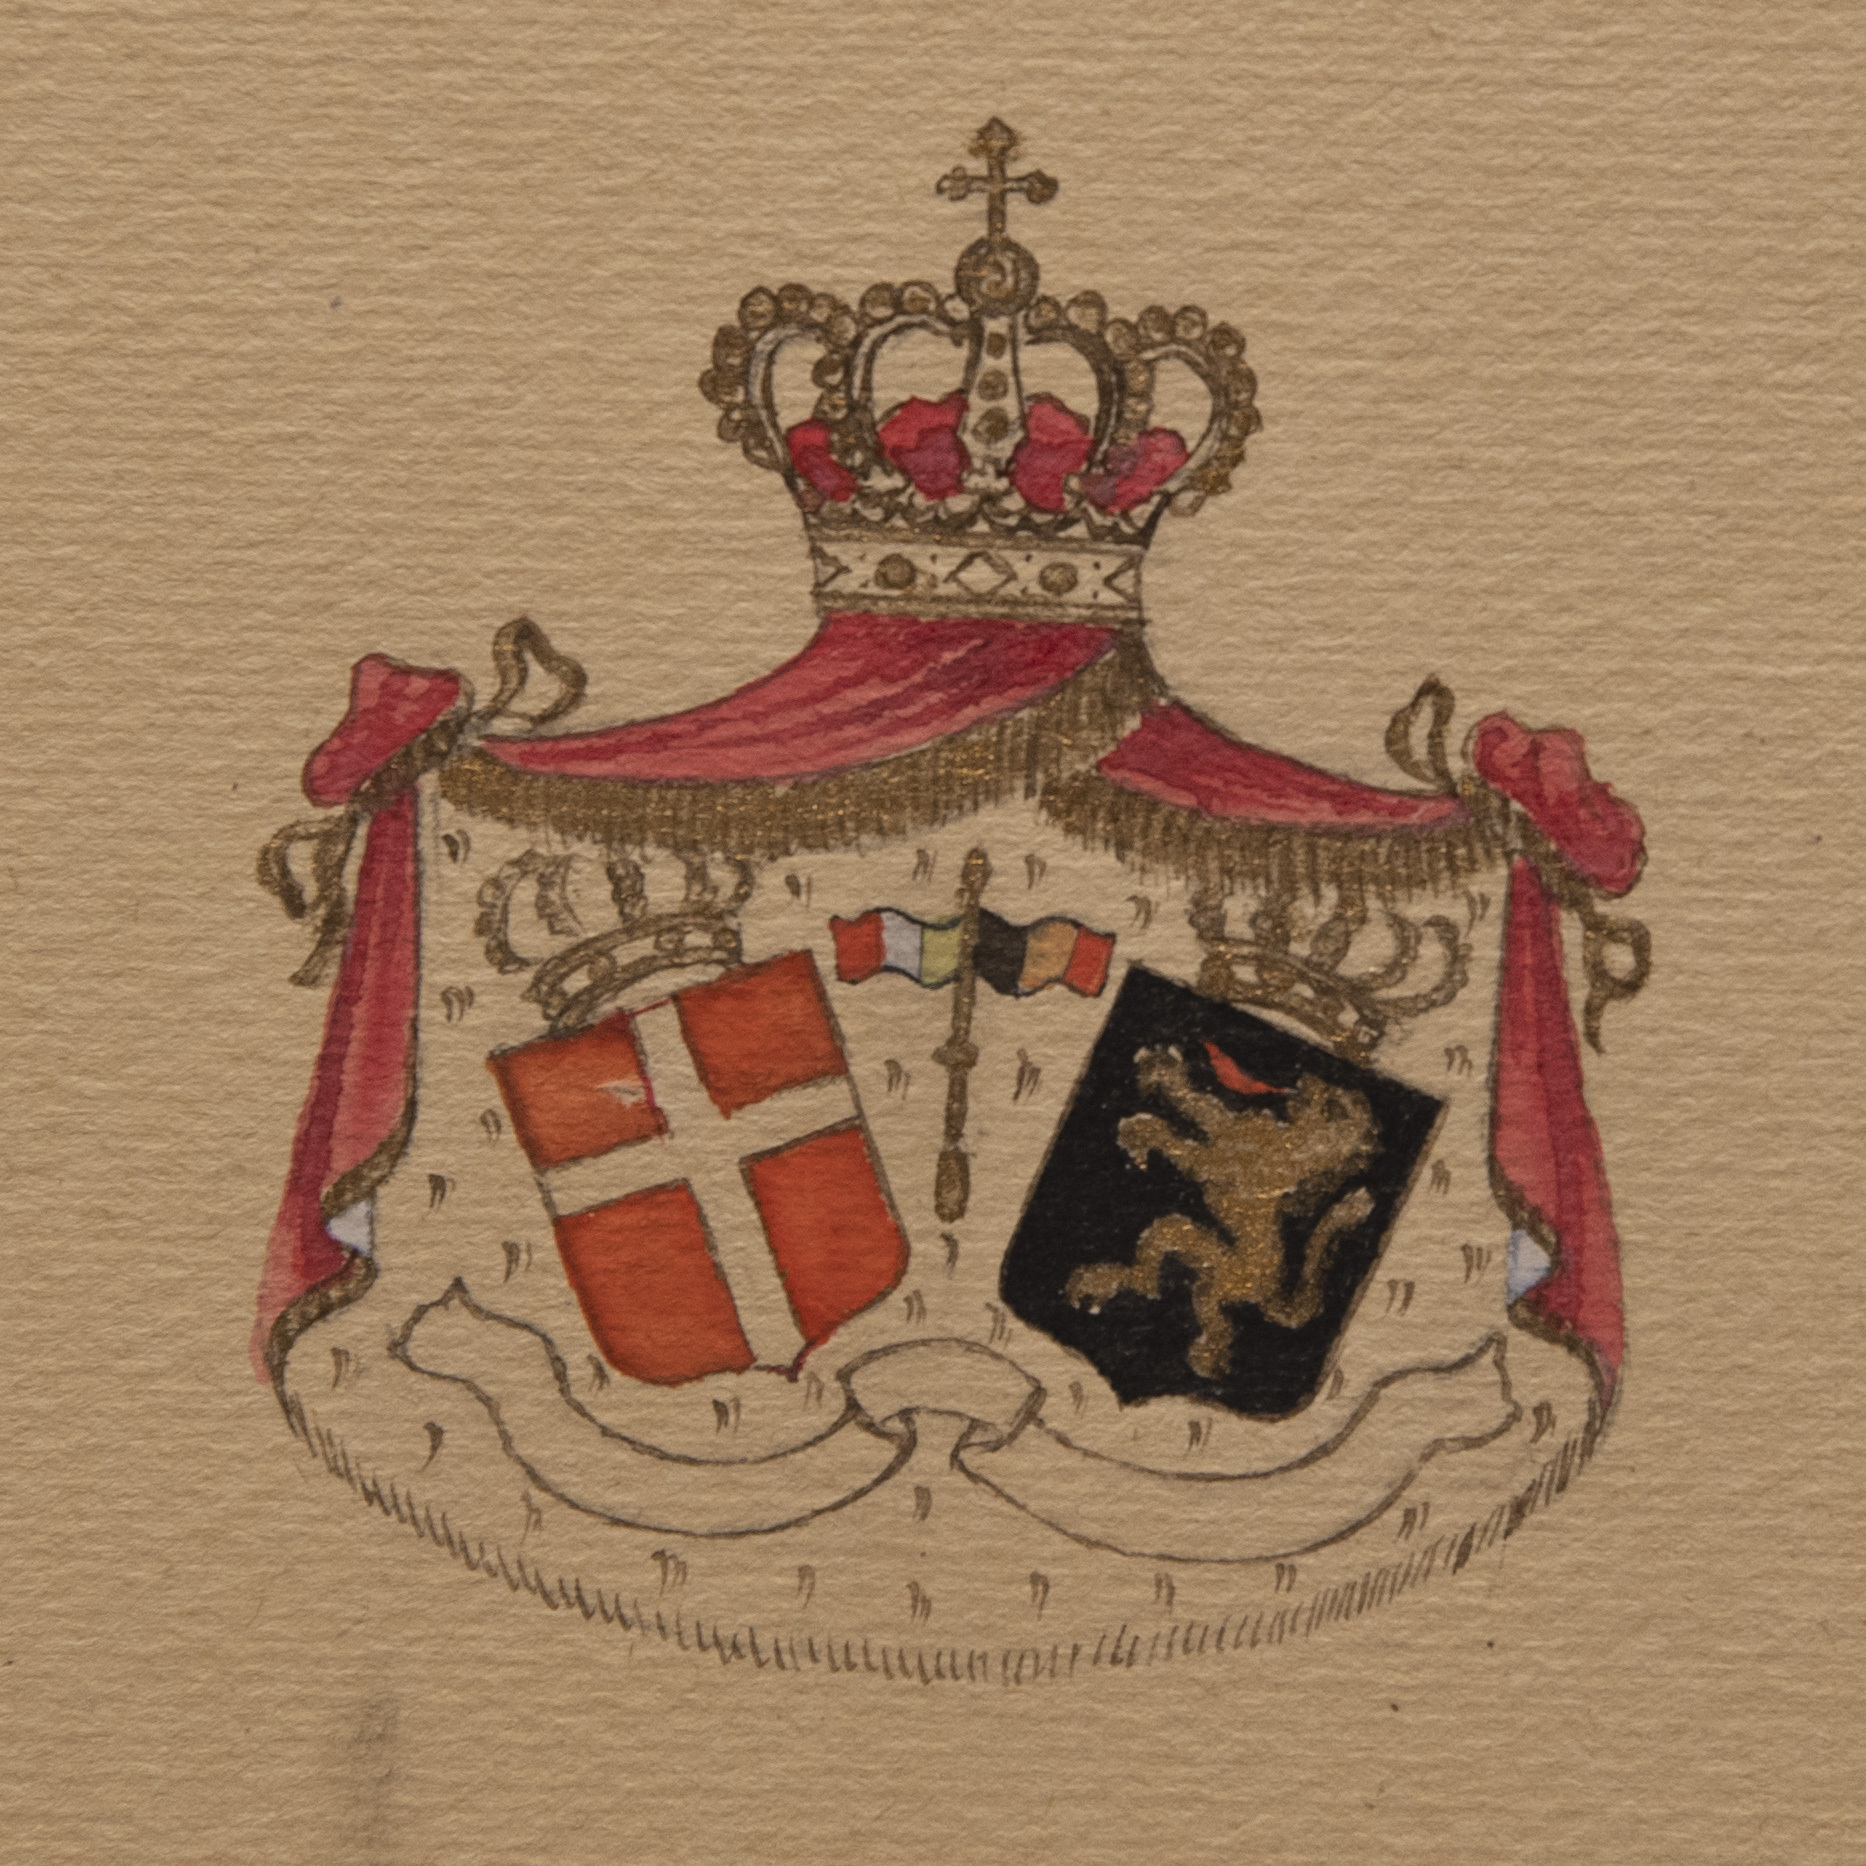 Les blasons de la Maison de Savoie et de la Maison de Belgique, emblèmes des familles royales italienne et belge.